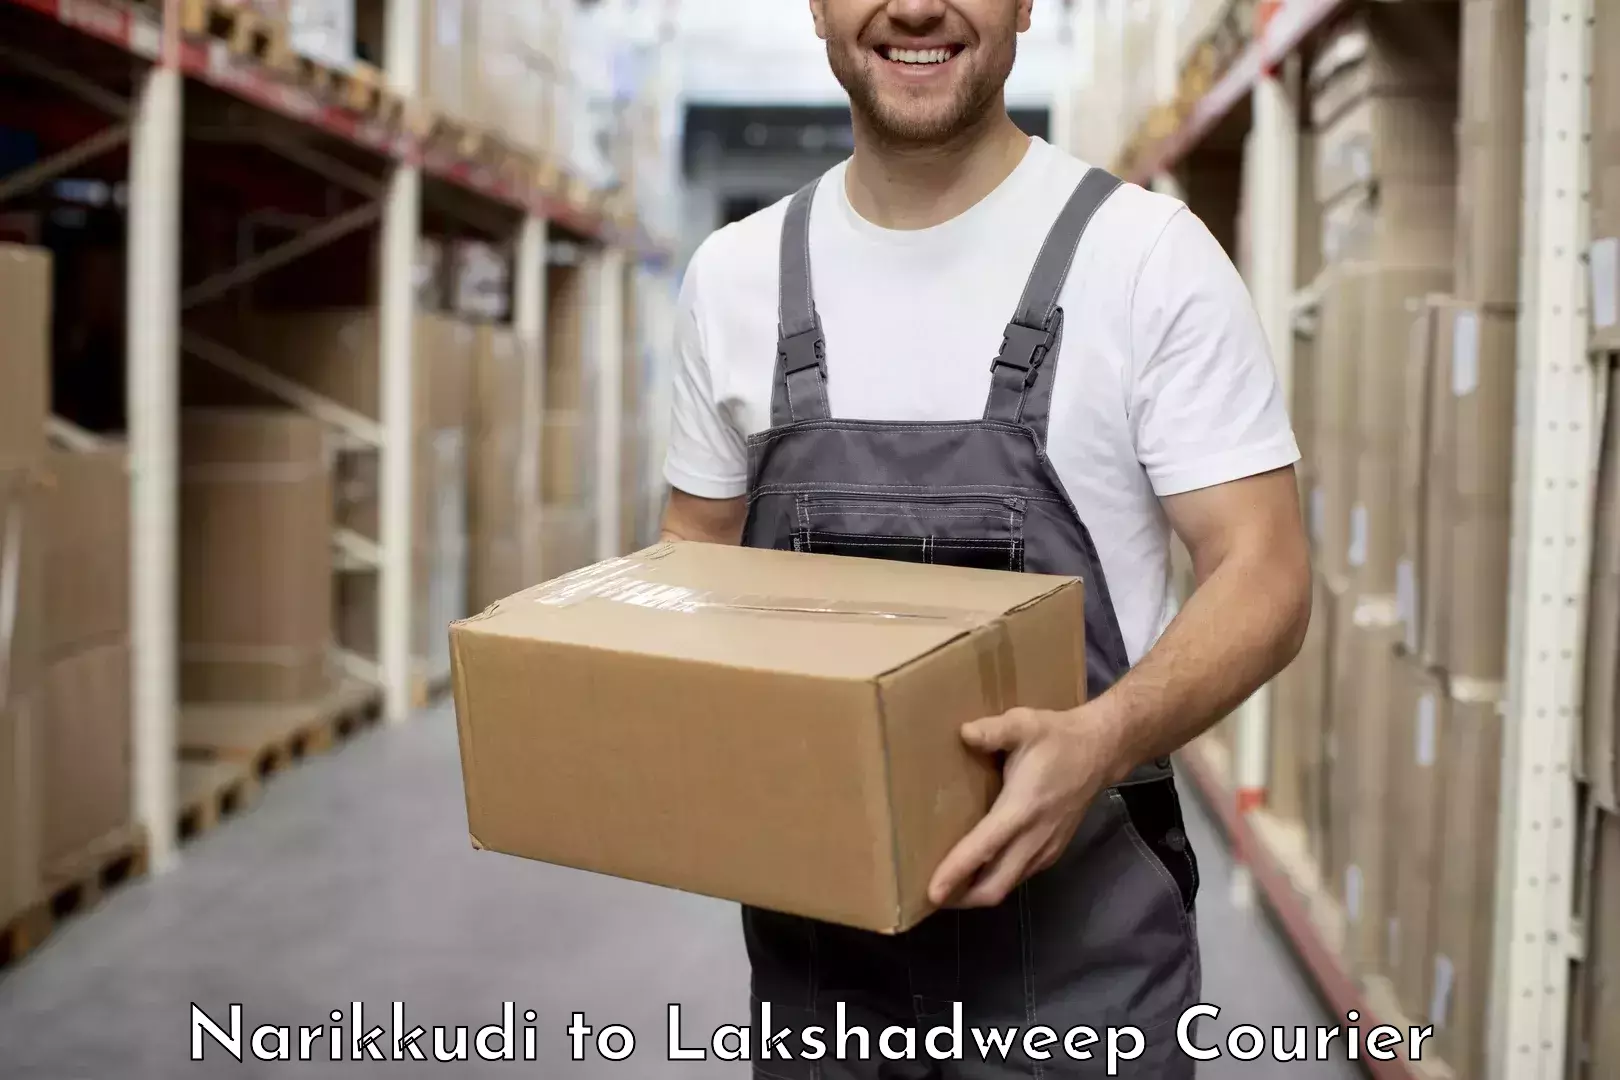 Professional parcel services Narikkudi to Lakshadweep